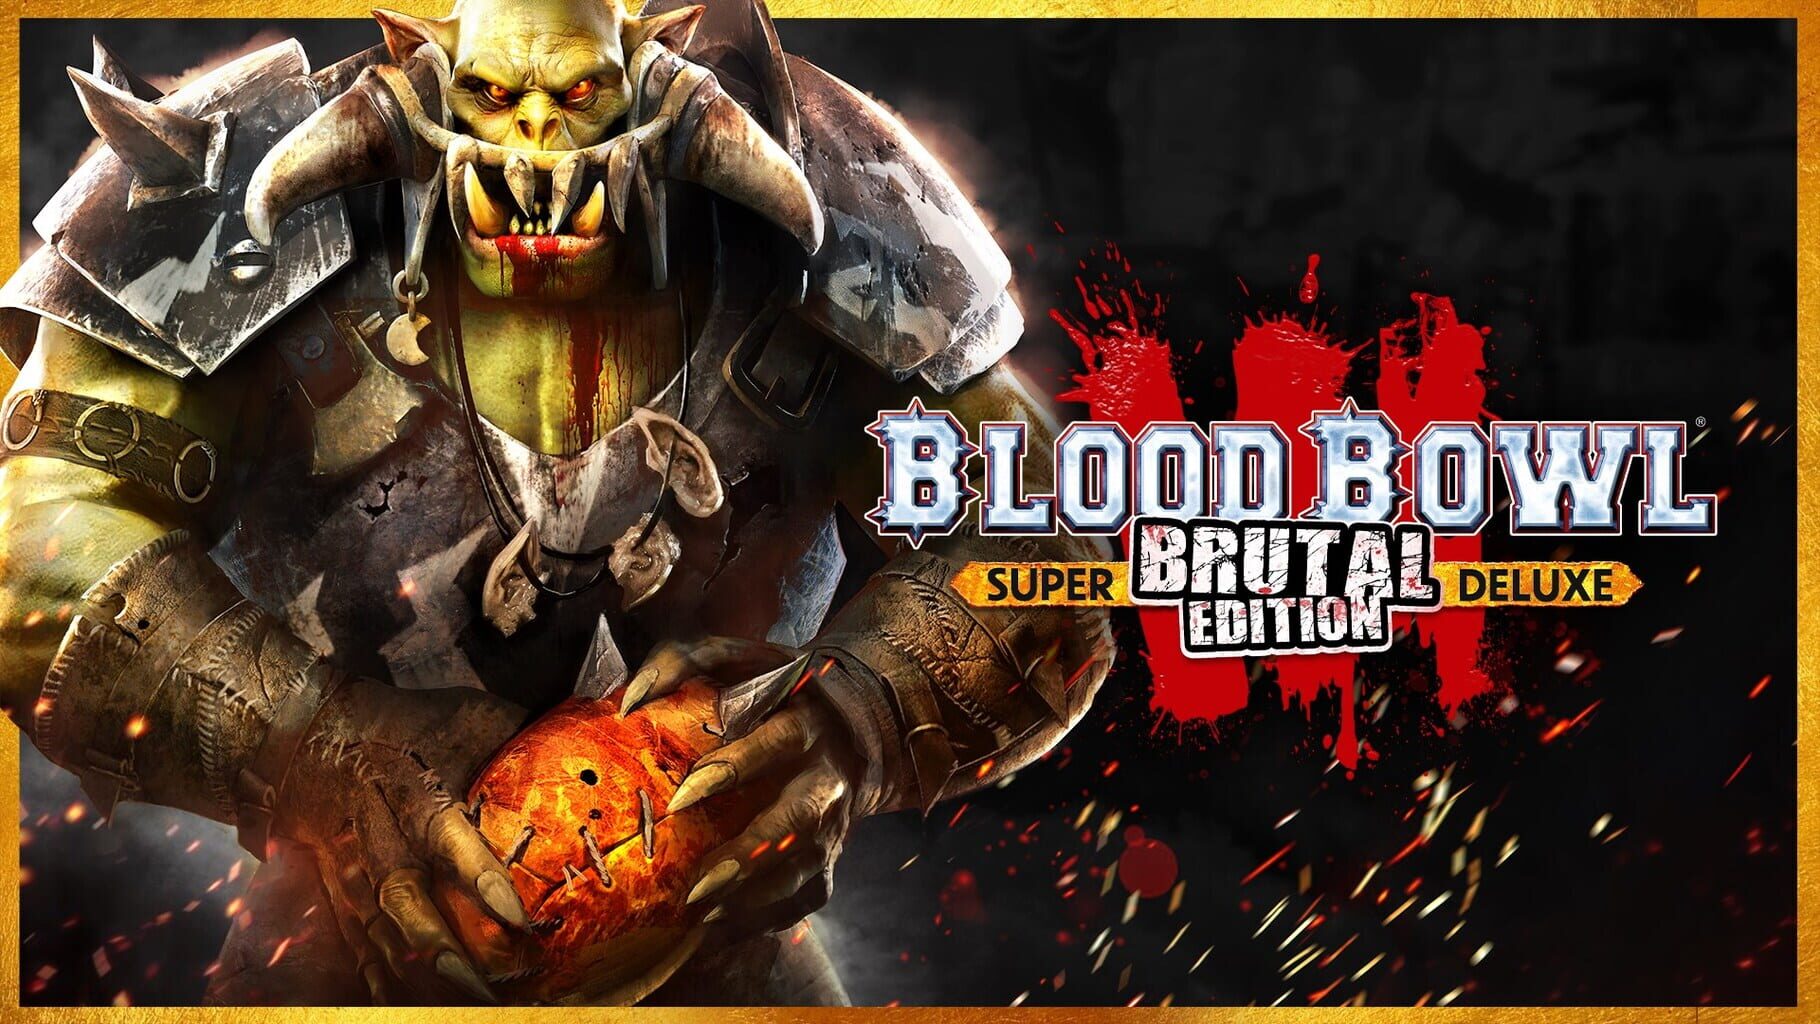 Blood Bowl 3: Brutal Edition artwork